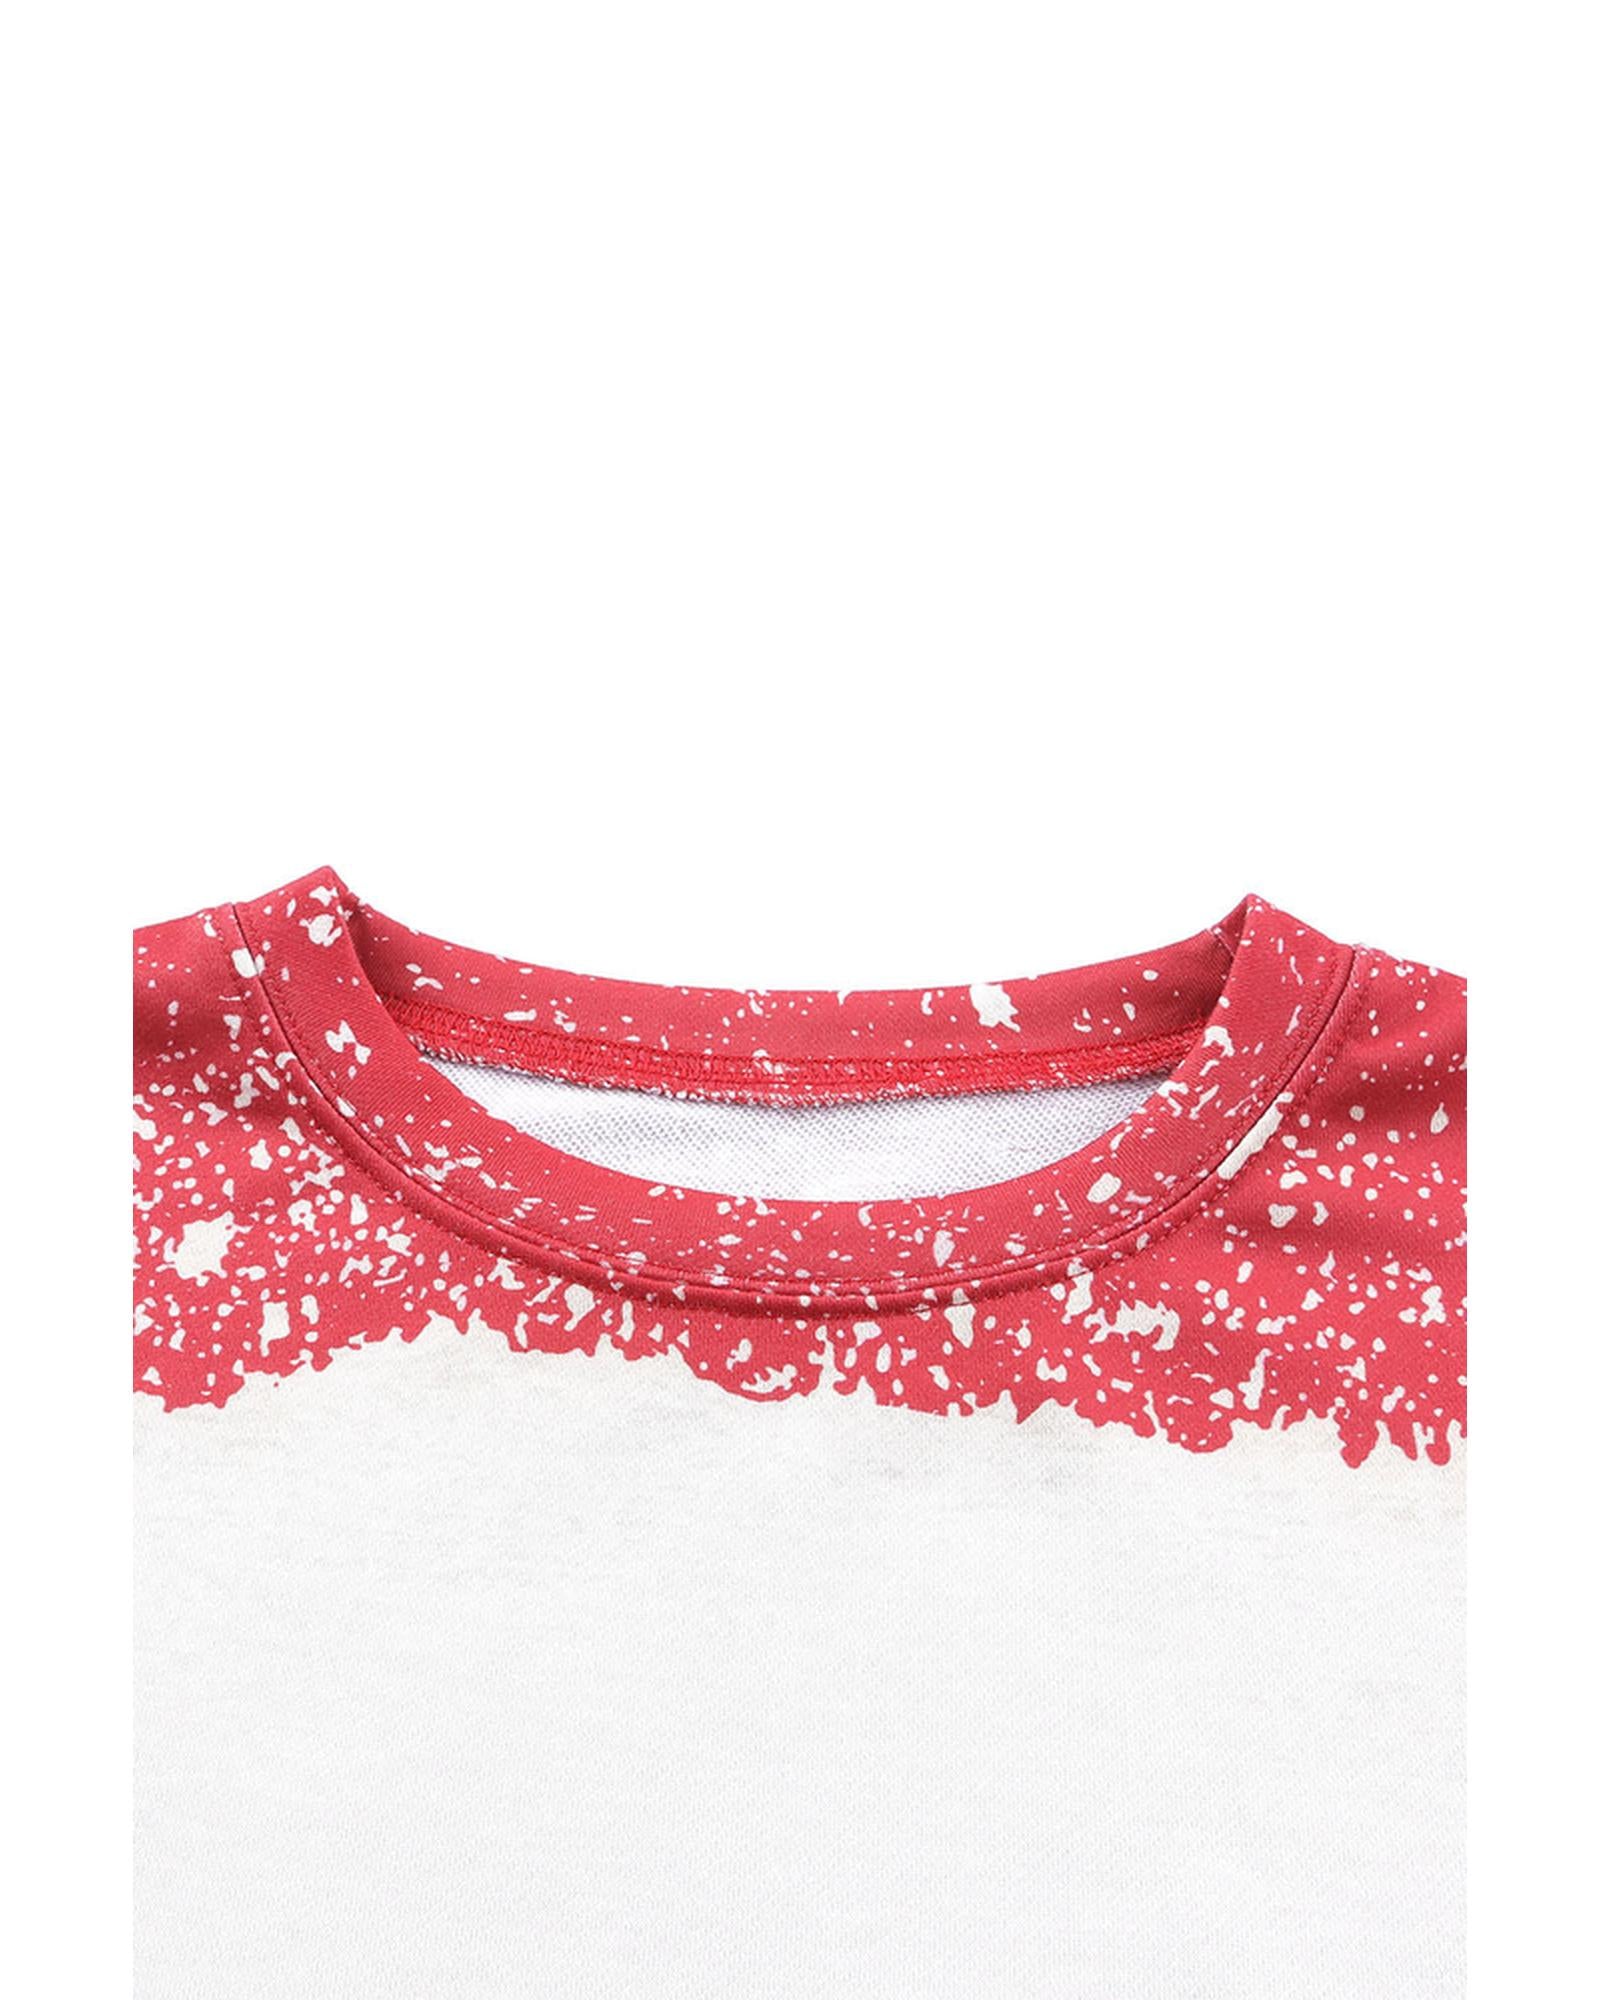 Azura Exchange Leopard Print Sweatshirt with Tie Dye Design - S